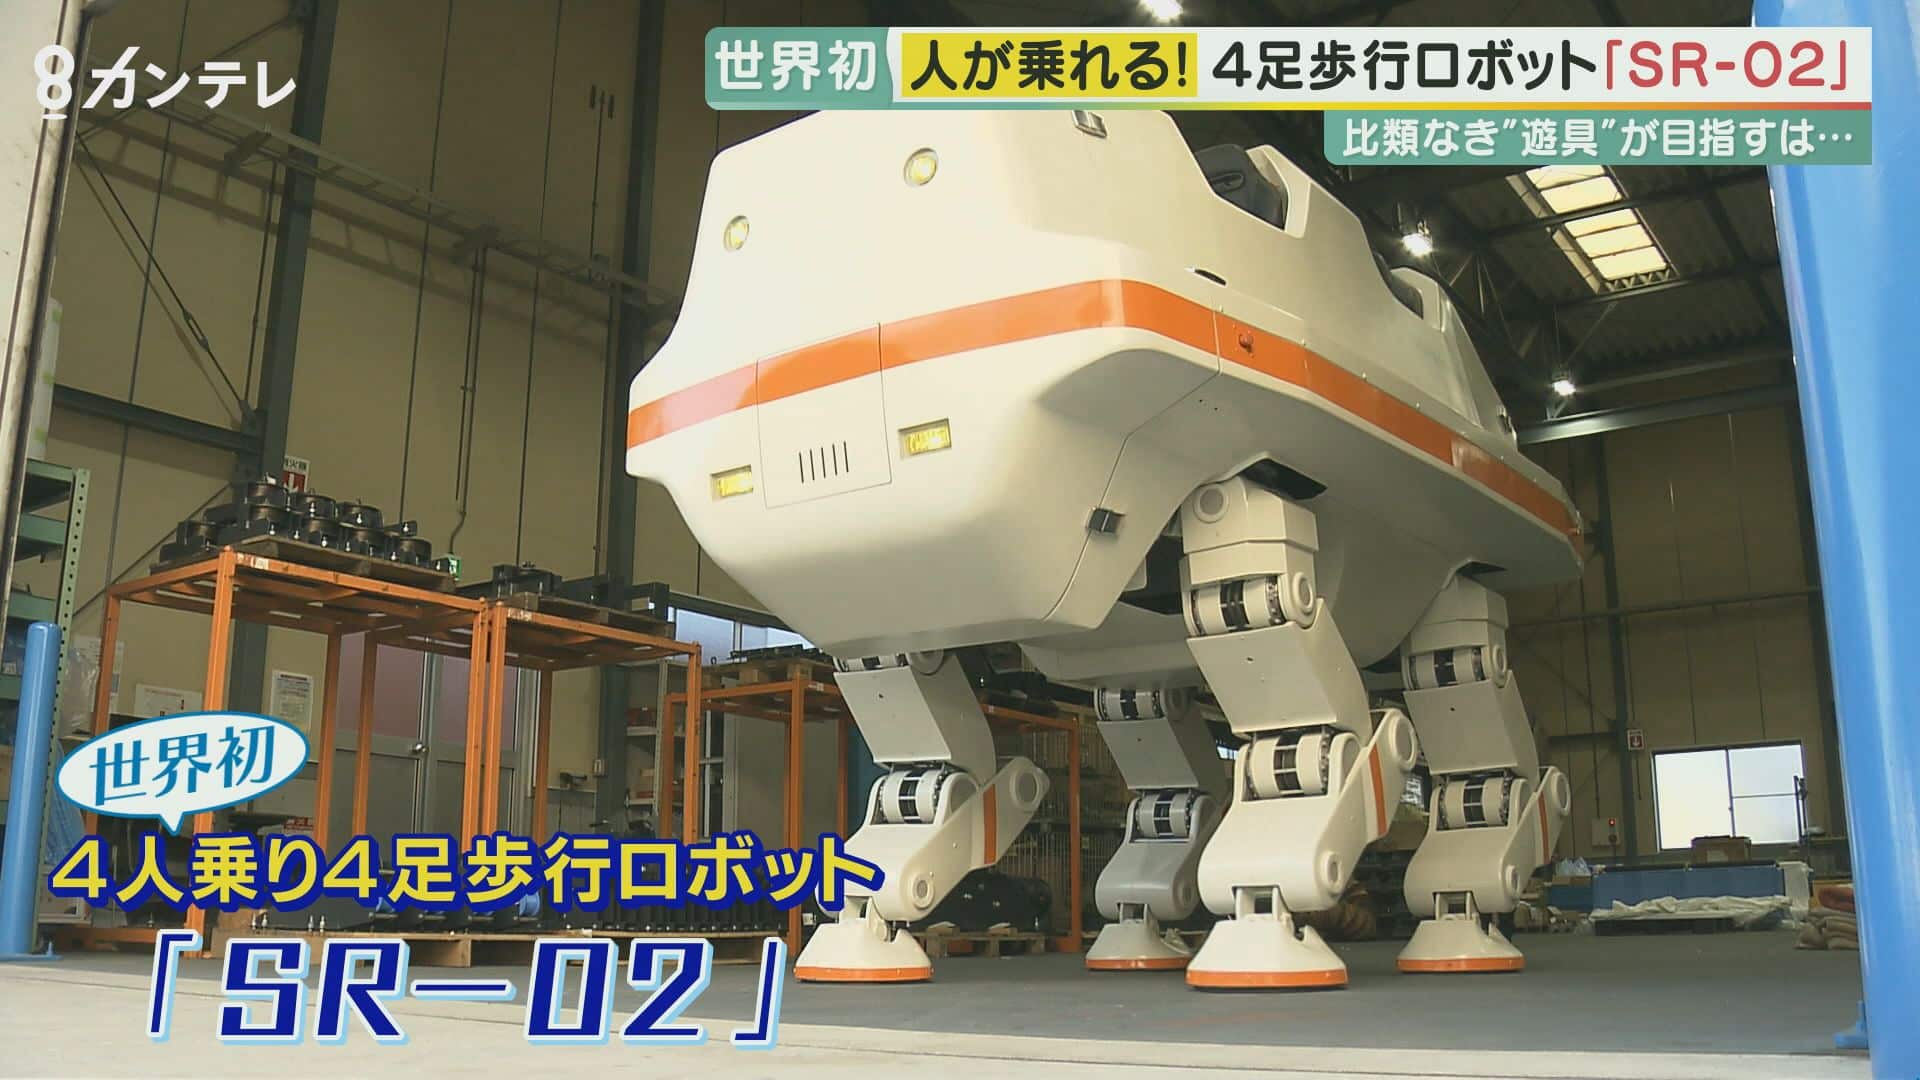 В Японии создали робота-носорога для перевозки пассажиров, похожего на шагоход «Звездных войн»